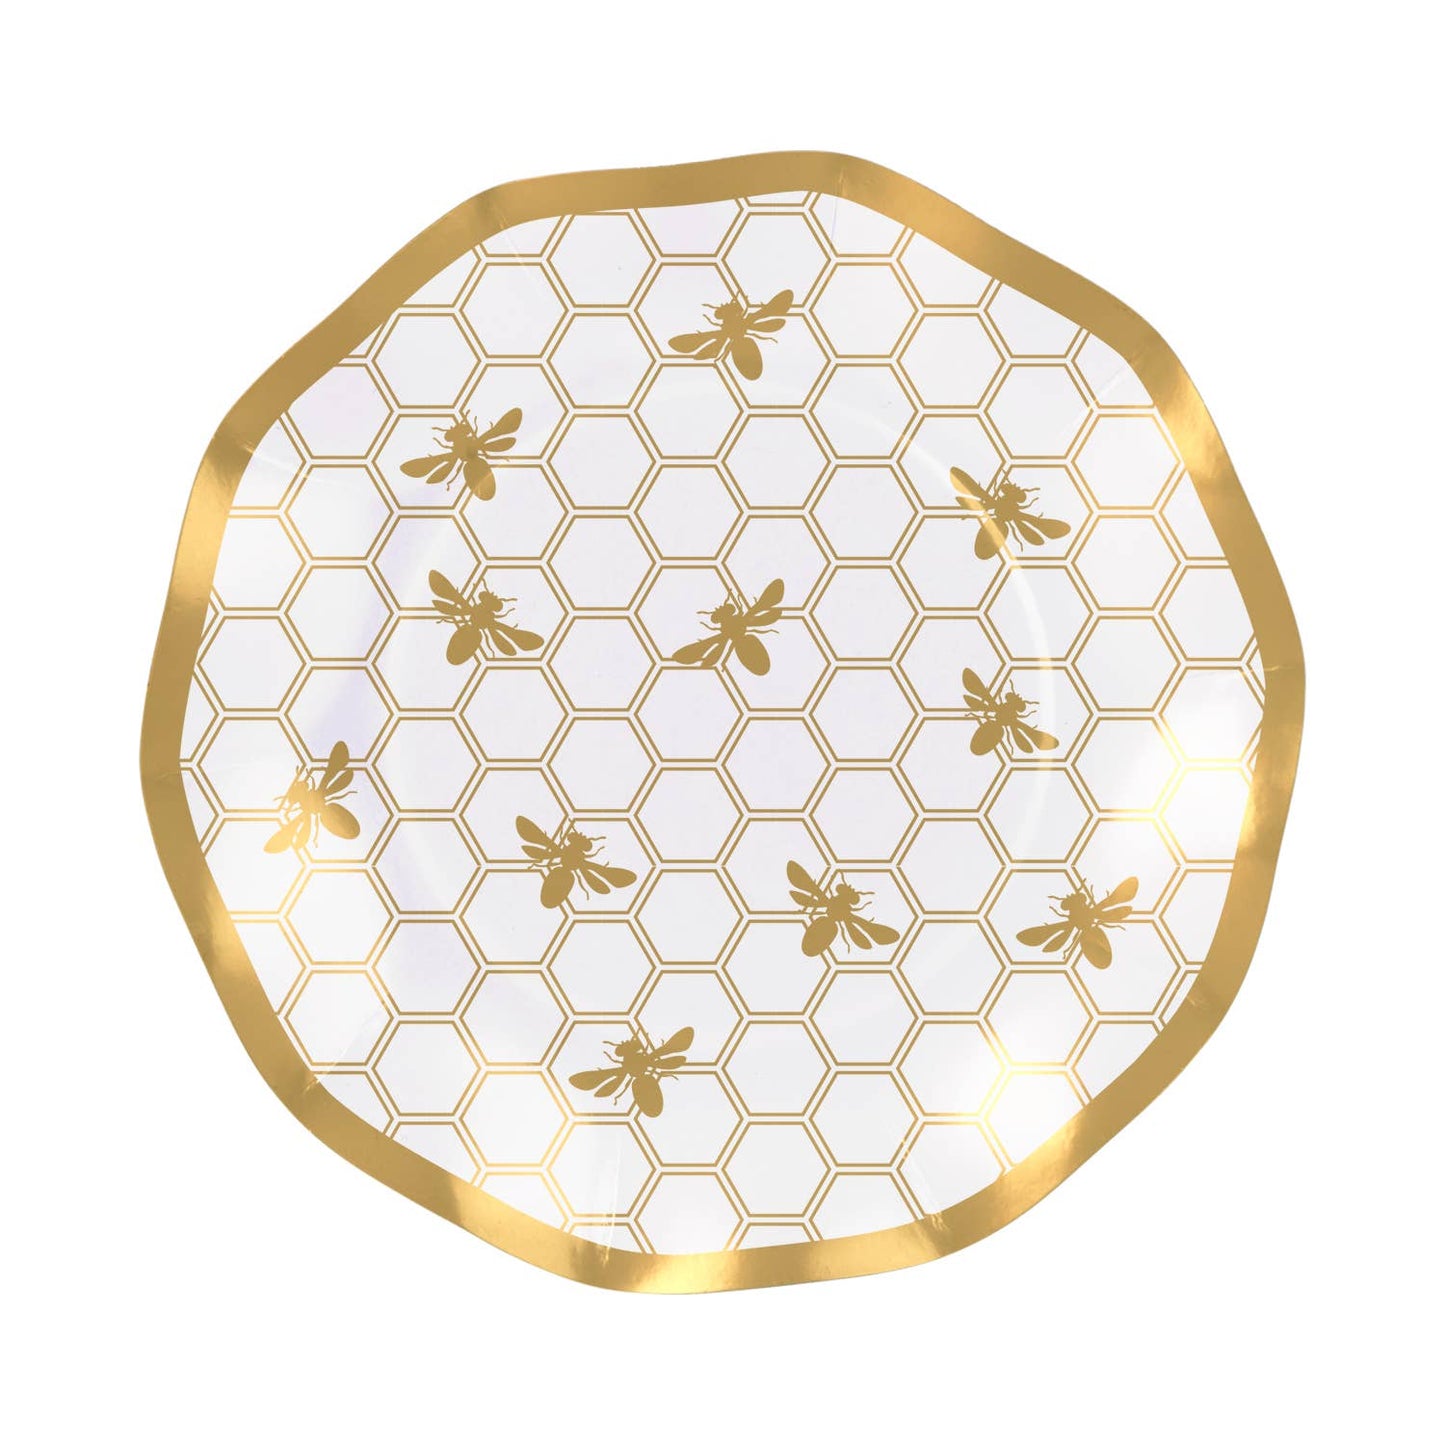 Honeybee Paper Plates